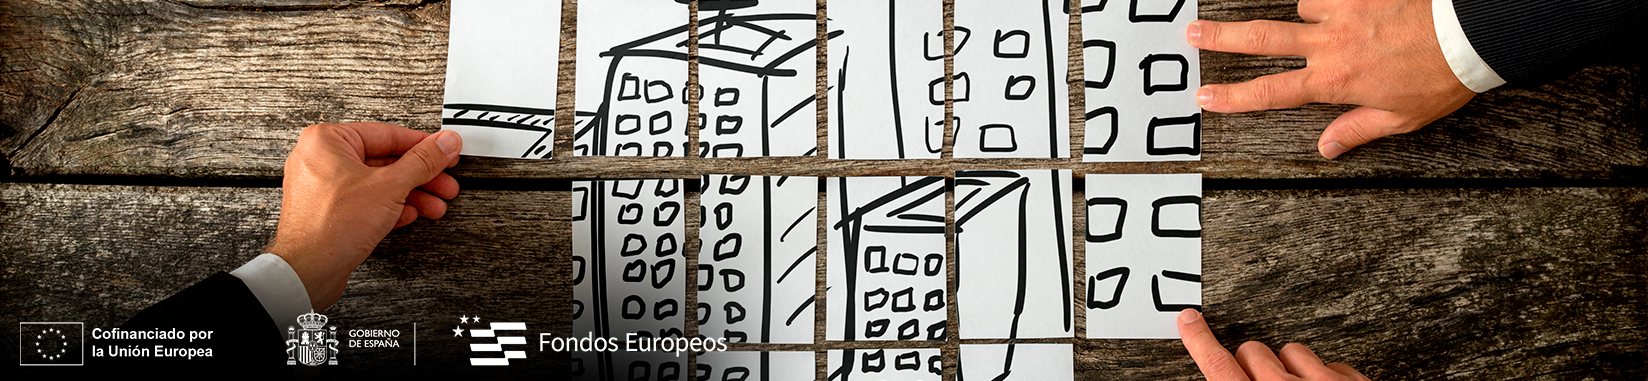 Imagen: Manos juntando papeles dibujados, que juntos hacen una ciudad con logos de cofinanciacion europea